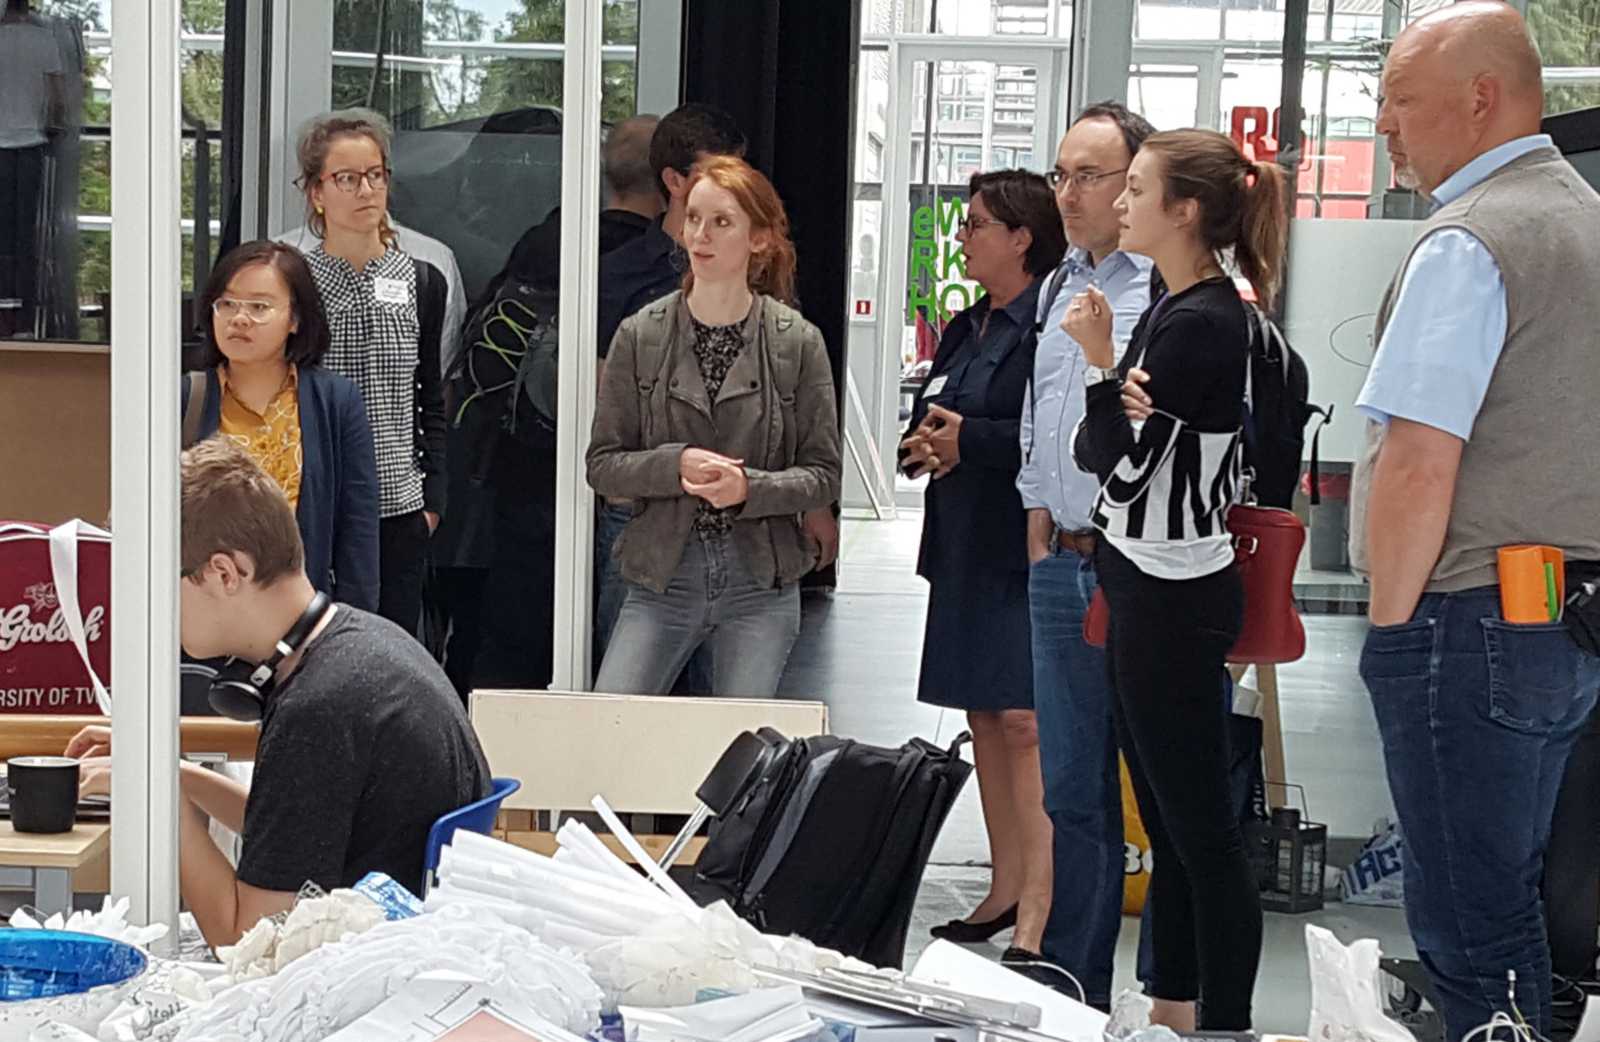 Die Delegation der FH Münster besichtigt studentische Arbeitsräume an der Universität Twente. (Foto: FH Münster/Annika Boentert)